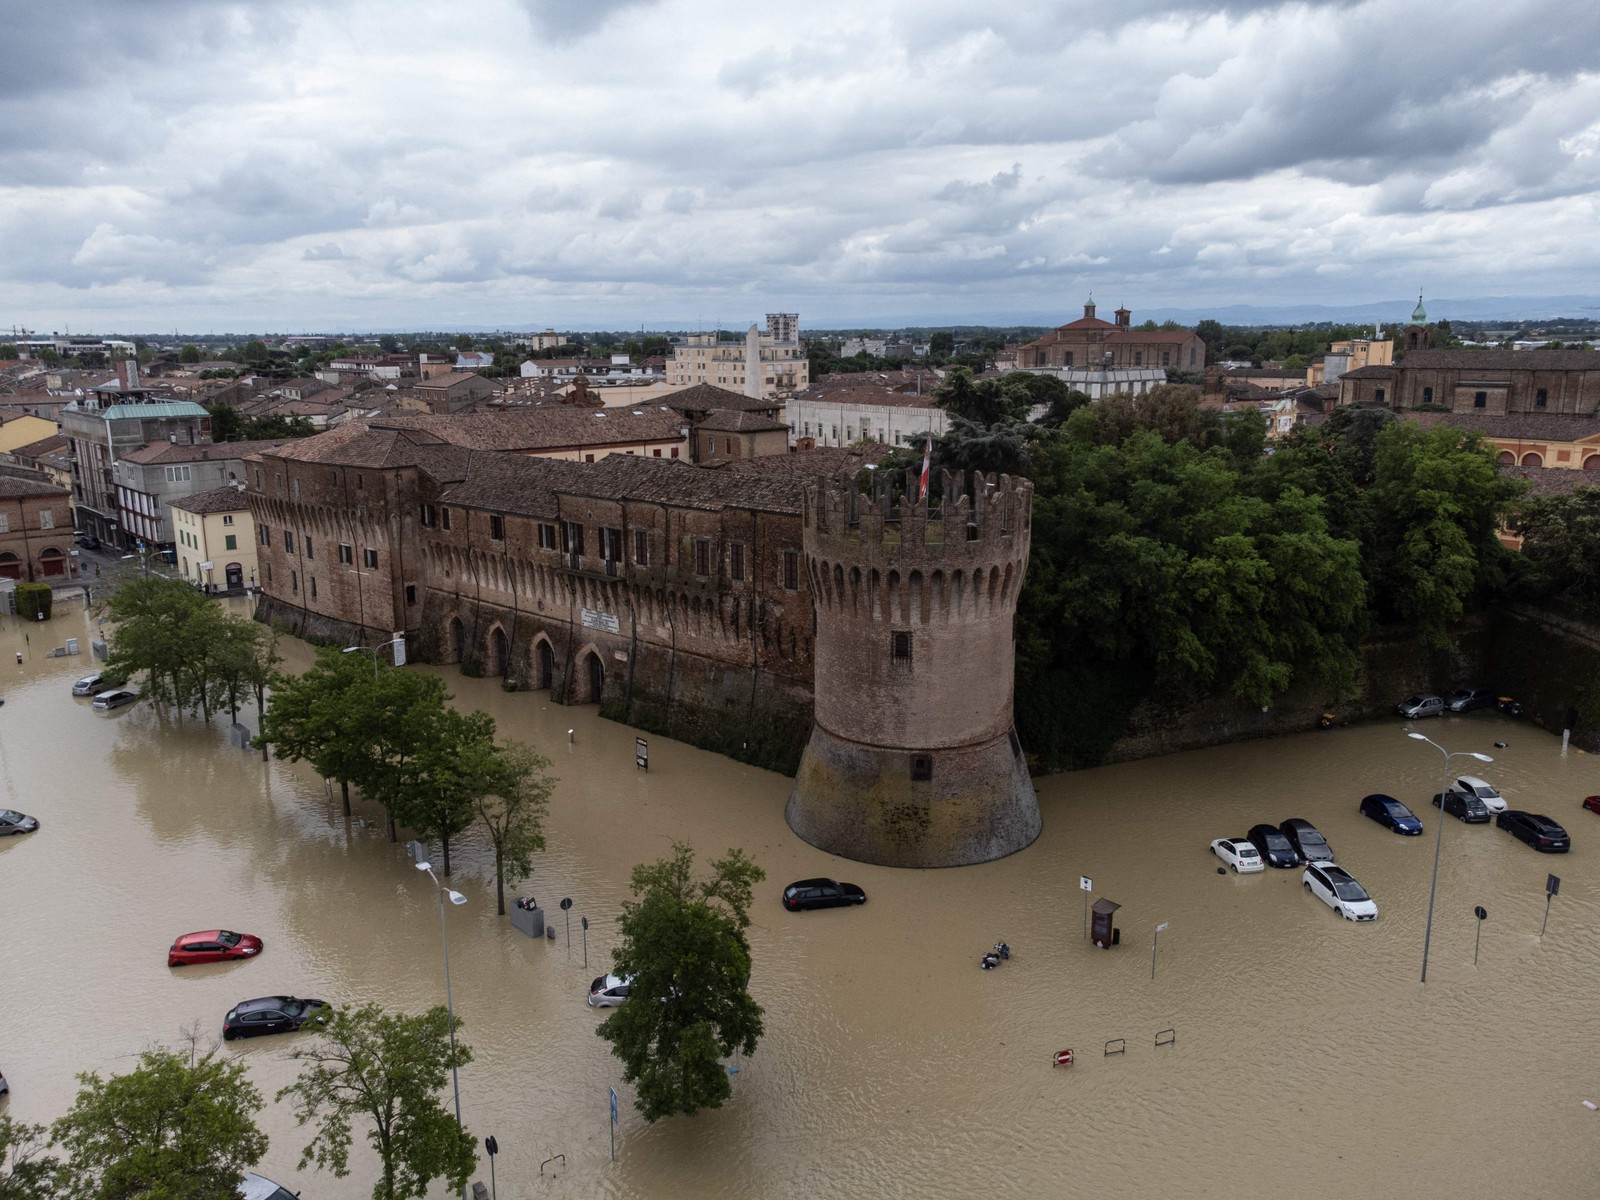 Está foi considerada a pior chuva em um século no país, com volume de seis meses de precipitação em apenas 36 horas — Foto: Federico SCOPPA/AFP